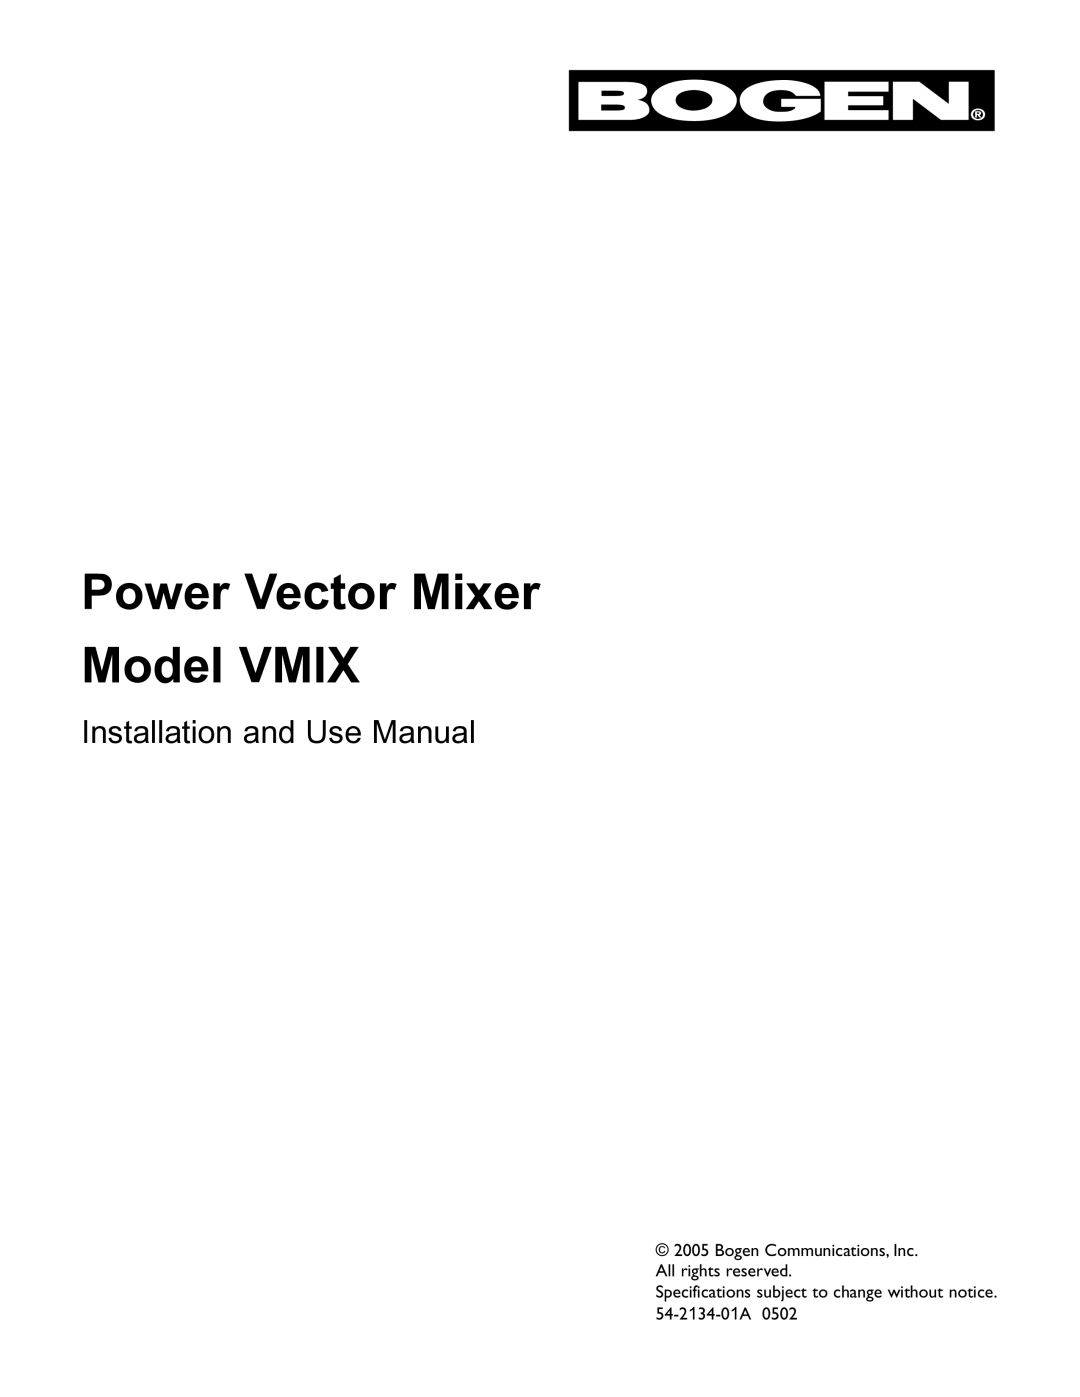 Bogen VMIX specifications Power Vector Mixer Model Vmix 